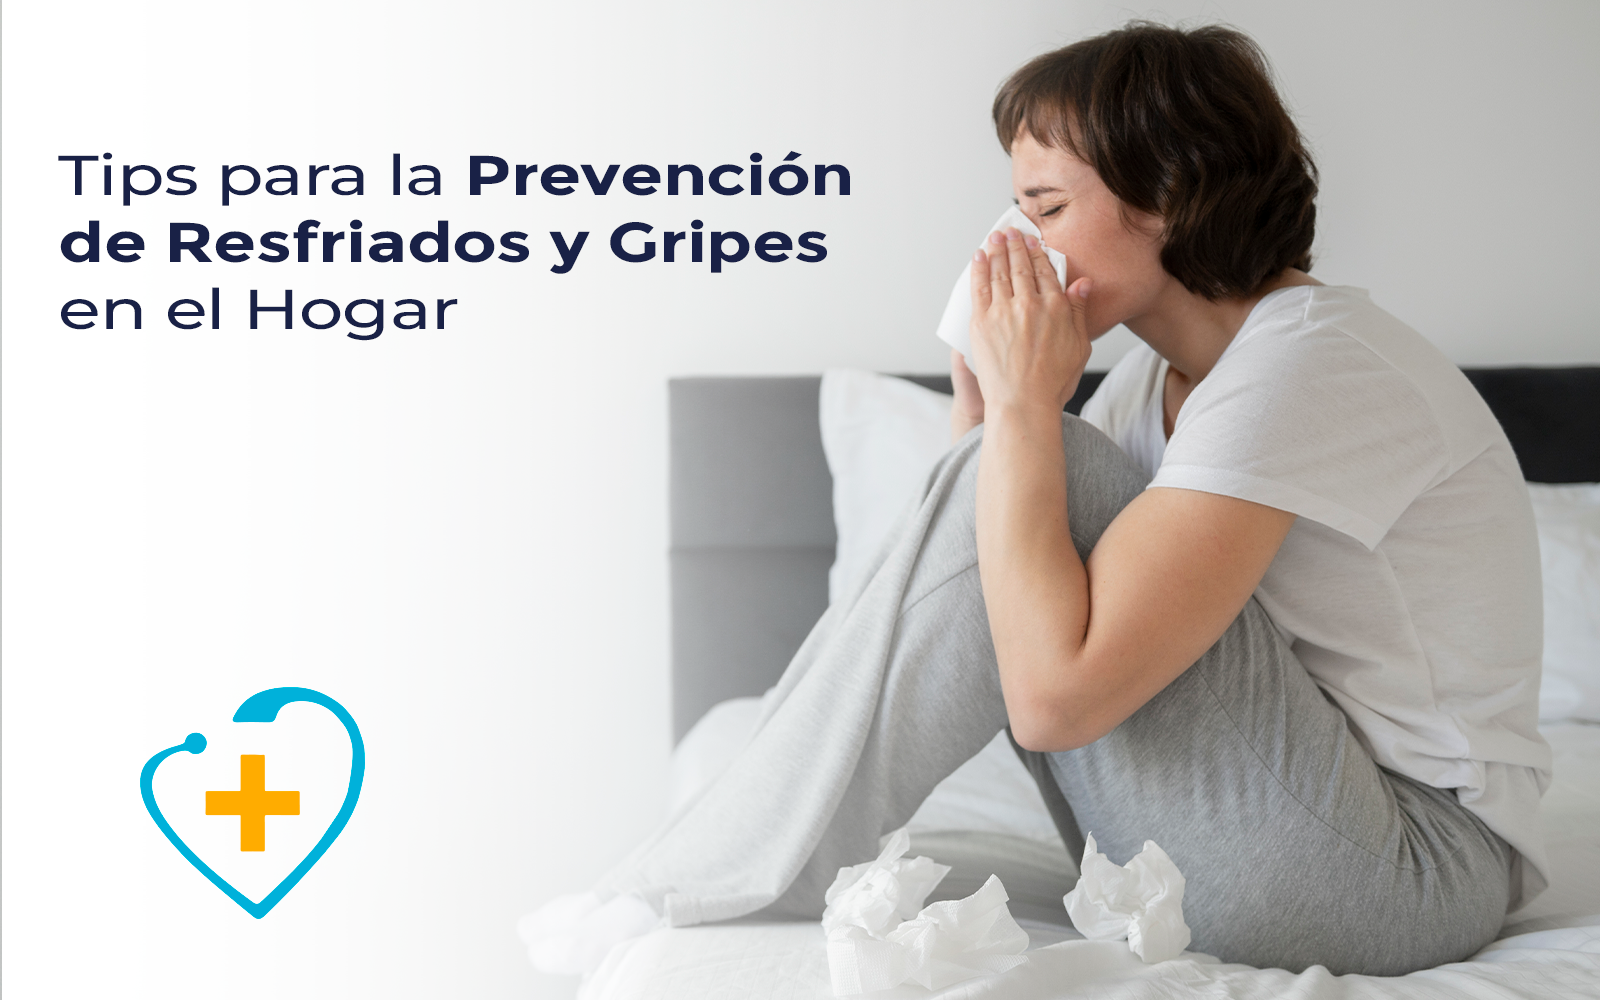 Tips para la Prevención de Resfriados y Gripes en el Hogar